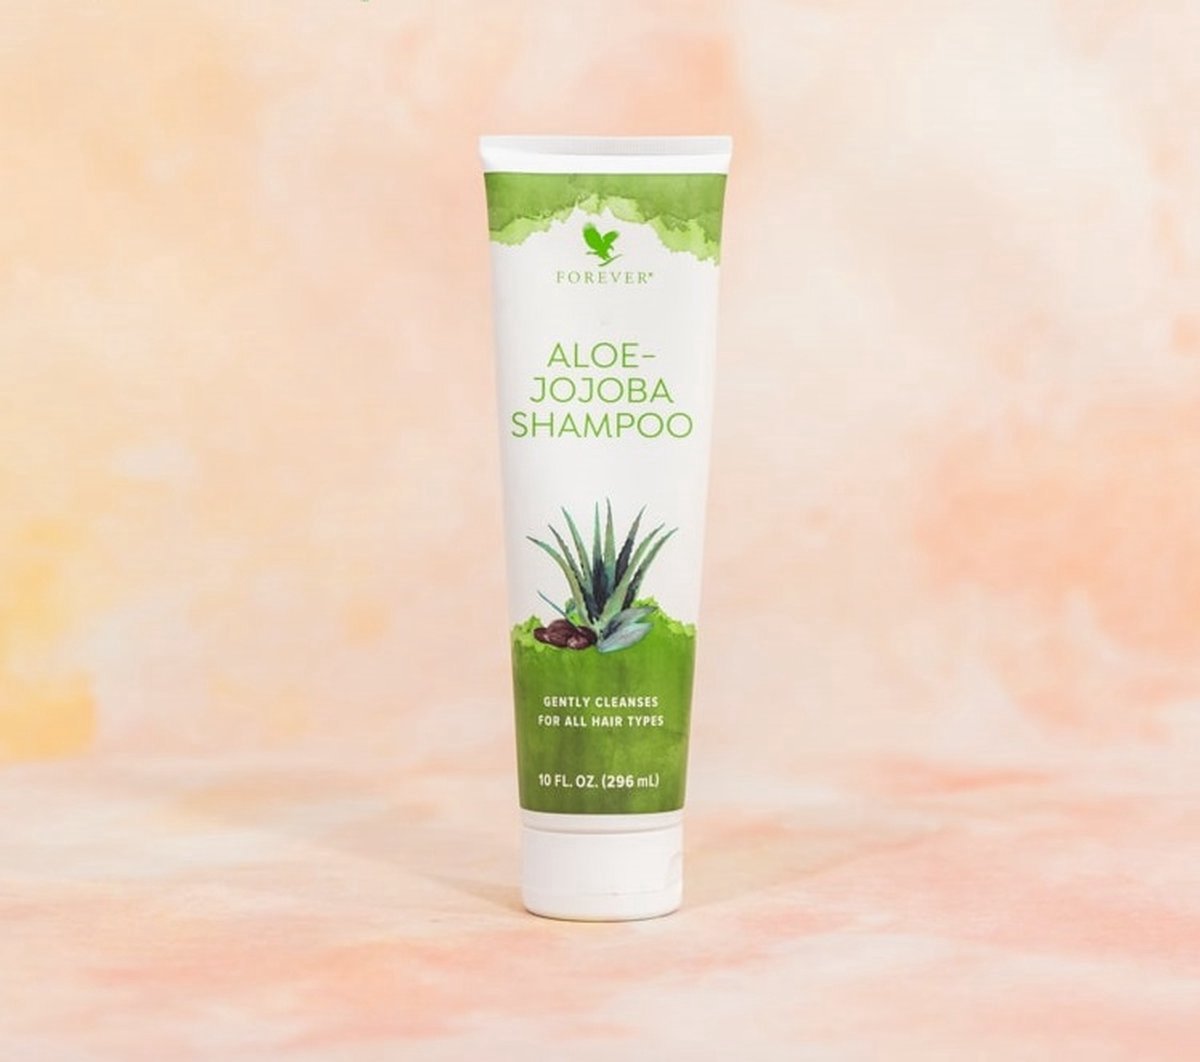 Aloe - Jojoba Shampoo - Merk Forever Living Product - Zonder Parabenen - Natuurlijke Basis - 100 % Gestabiliseerde AloeVera Voedt Het Haar Tot In De Puntjes - Shampoo Zuinig In Gebruik - Stimuleert Het Haar Groei -